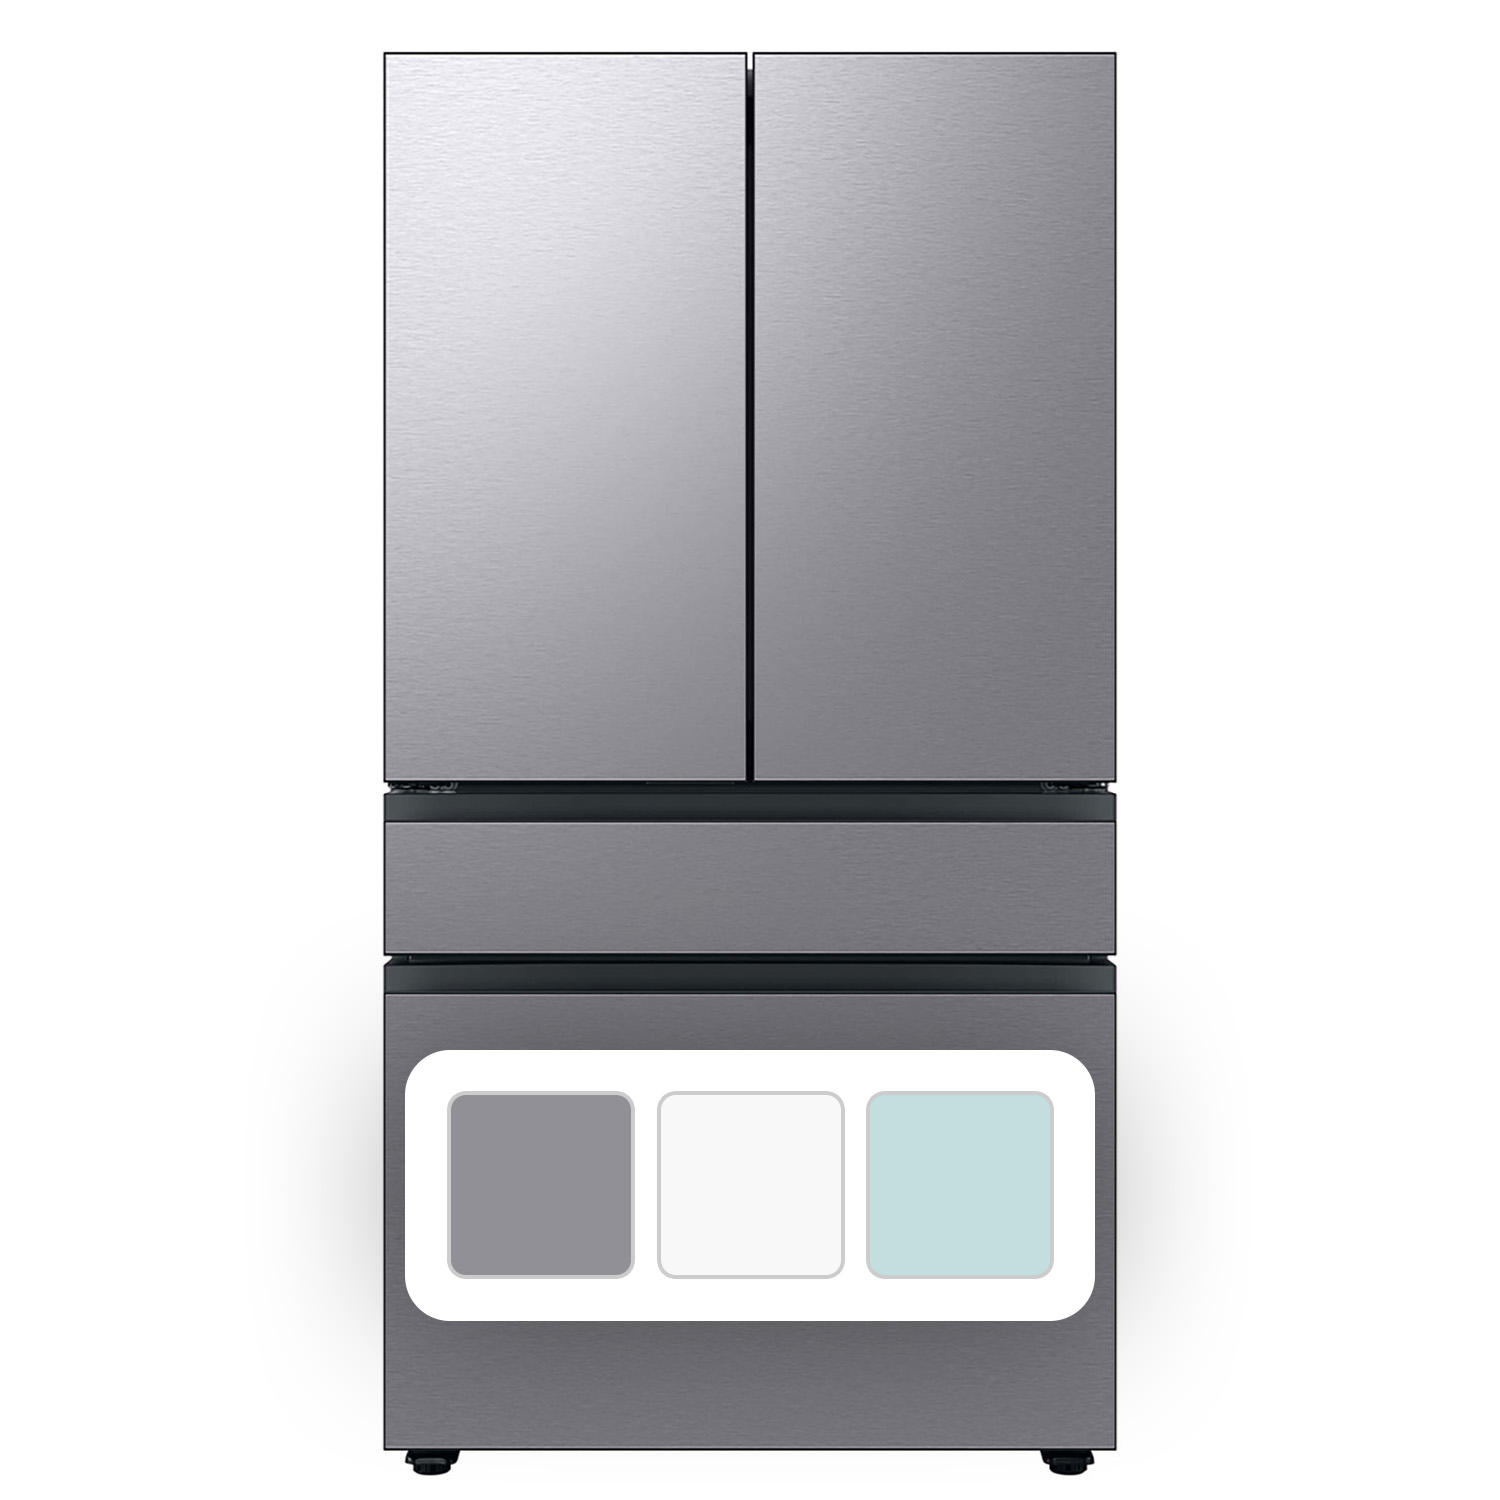 Samsung Bespoke 29 Cu. Ft. 4-Door French Door Refrigerator with Beverage Center (Stainless Steel)